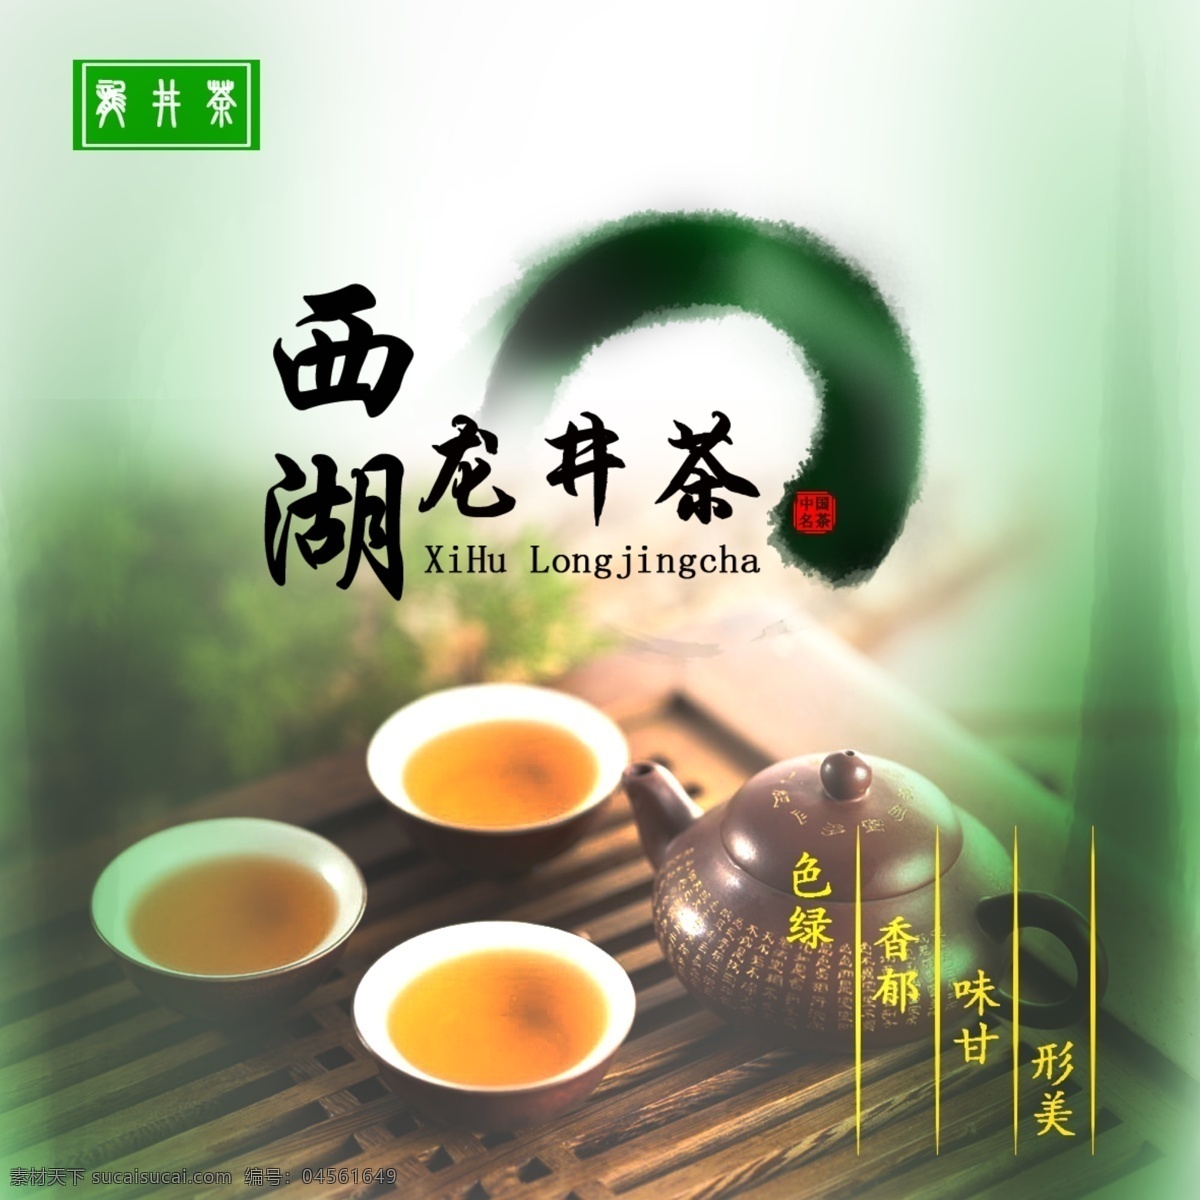 西湖 龙井茶 平面 包装 展示 图 绿茶 包装设计 茶叶 正面 特点 绿色 健康 主题突出 立意新颖 注重 产品 古色古香 图形与创意 字效 环境渲染 白色